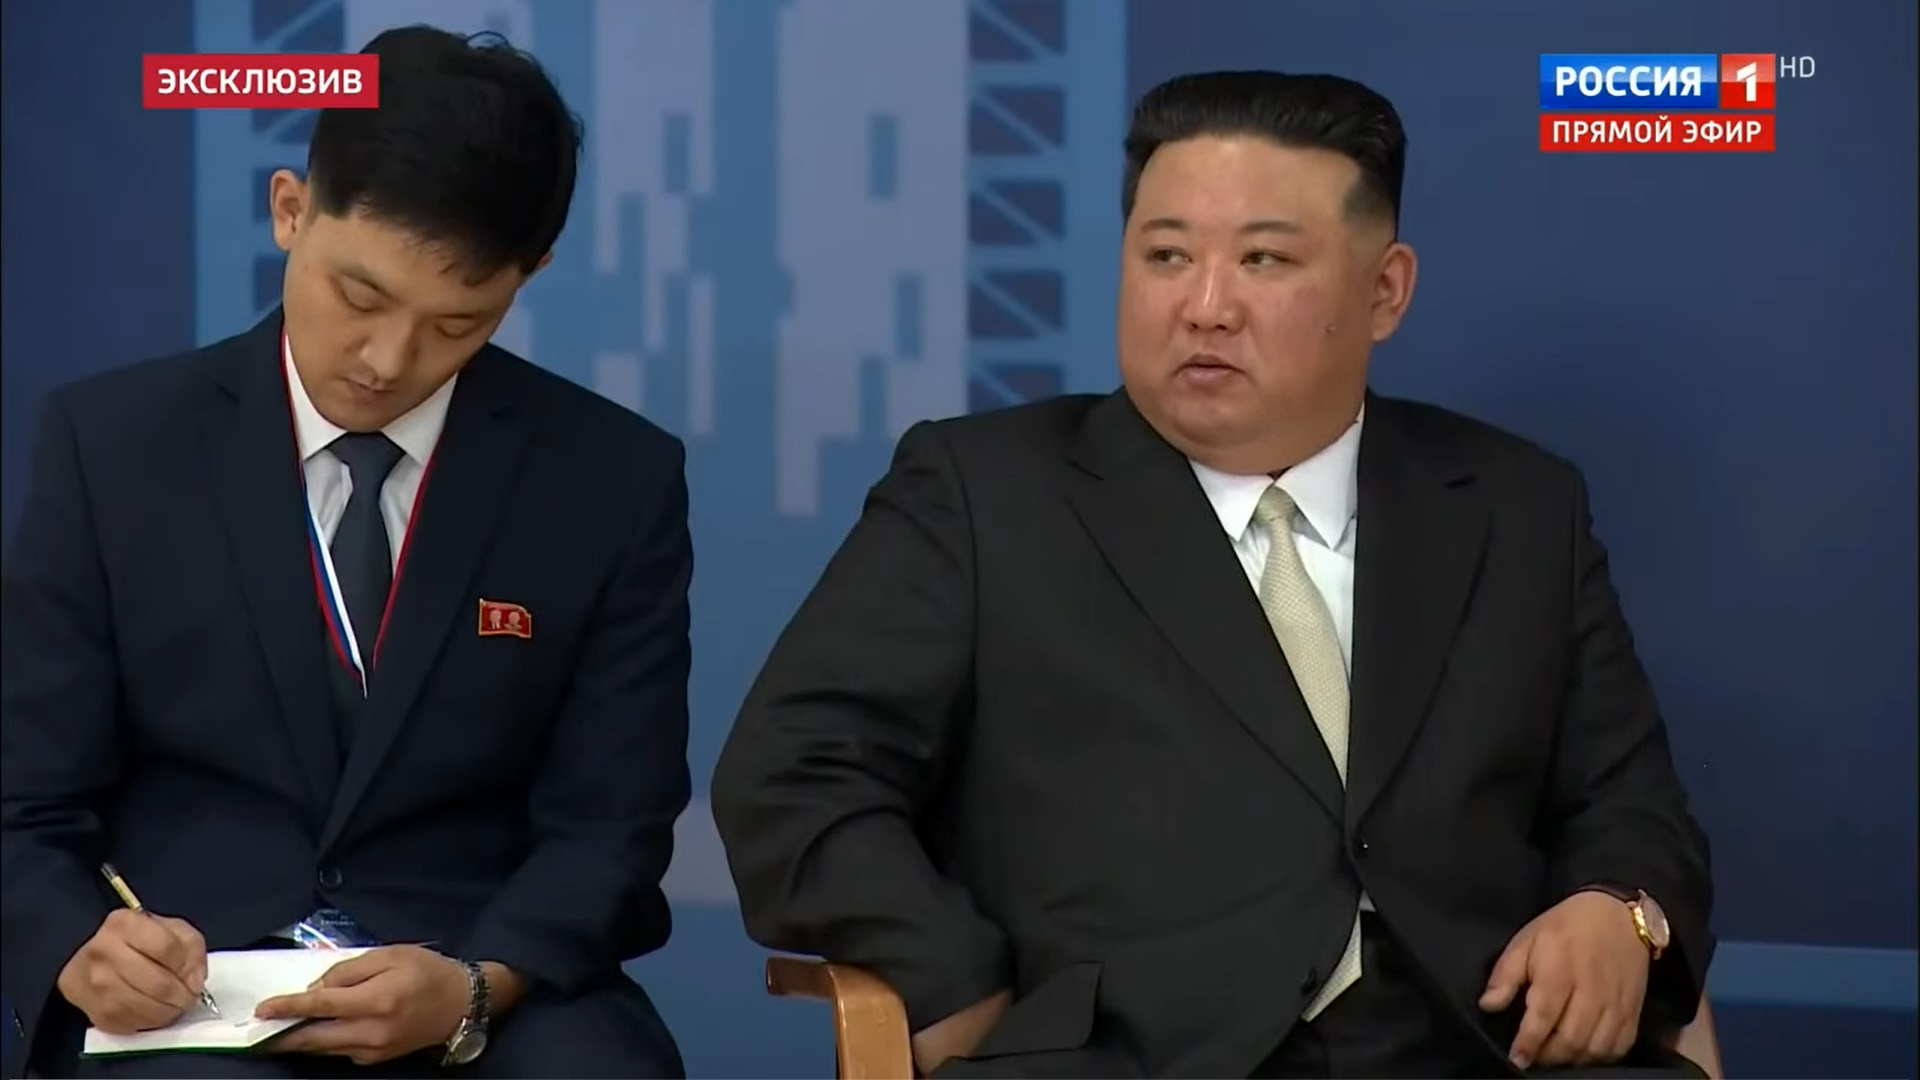 «Саечка за испуг всему миру». На российском ТВ обсудили визит Ким Чен Ына в Россию